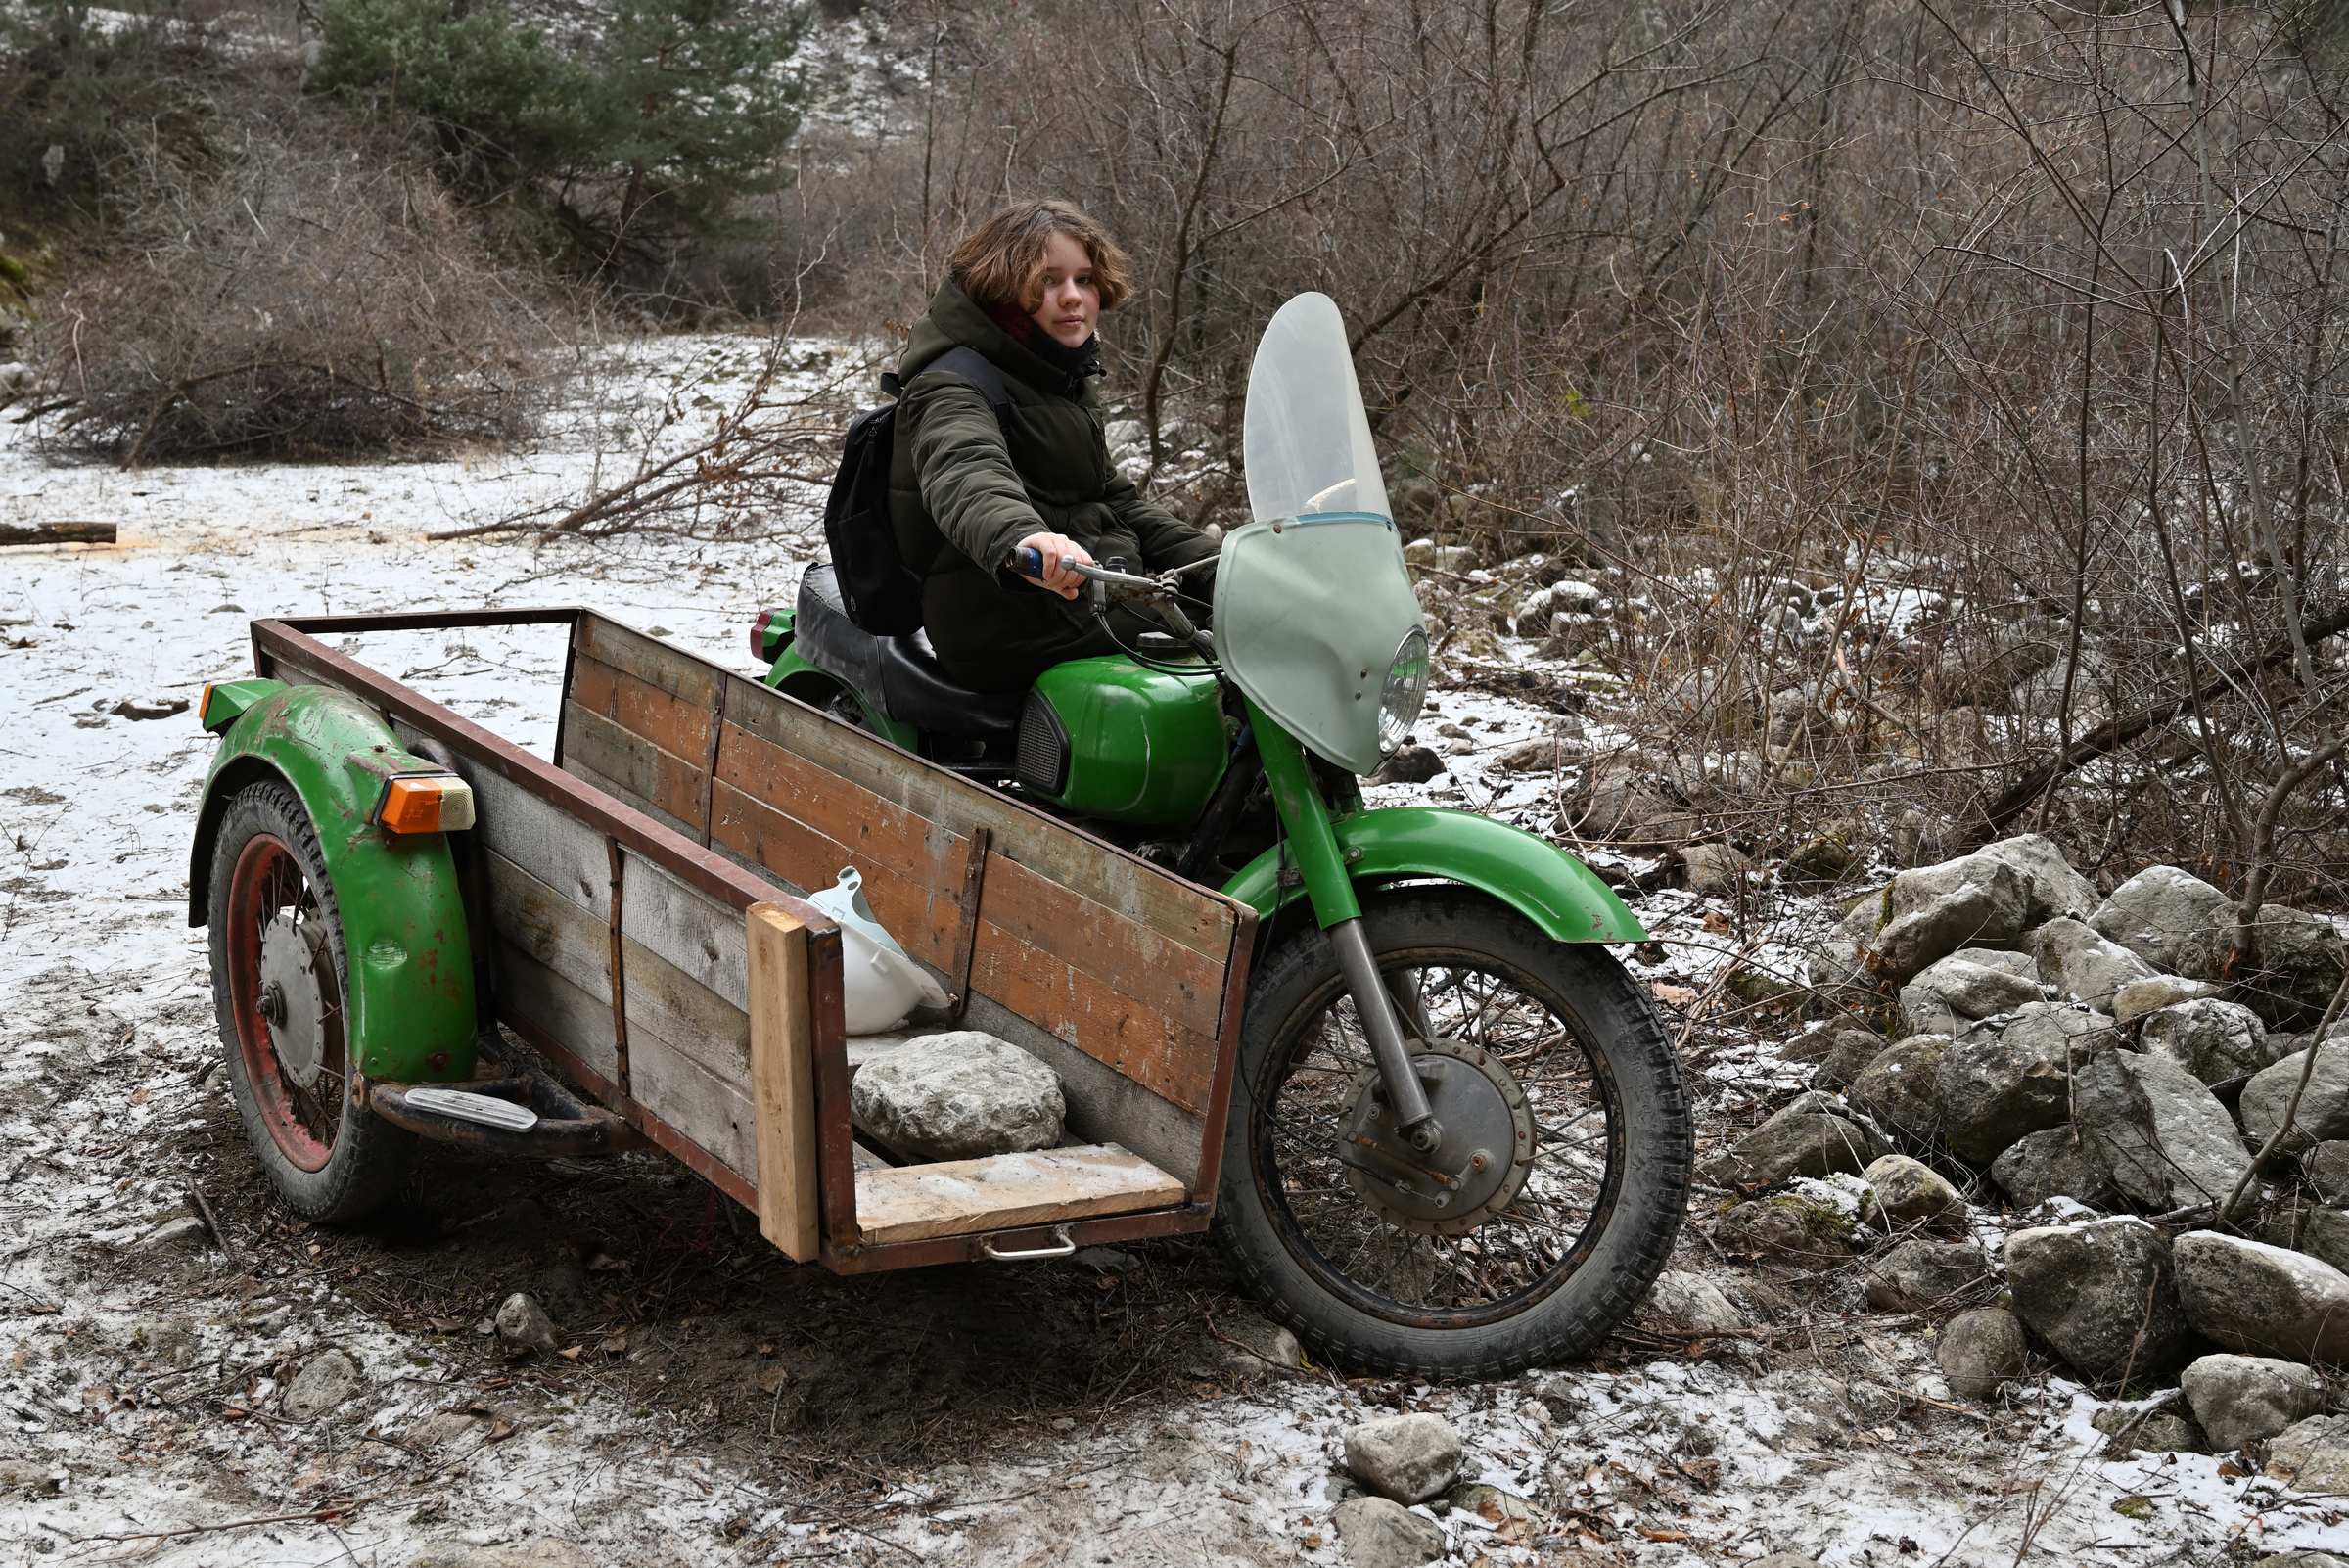 Дагестан. Забытый мотоцикл в Карадахском ущелье.